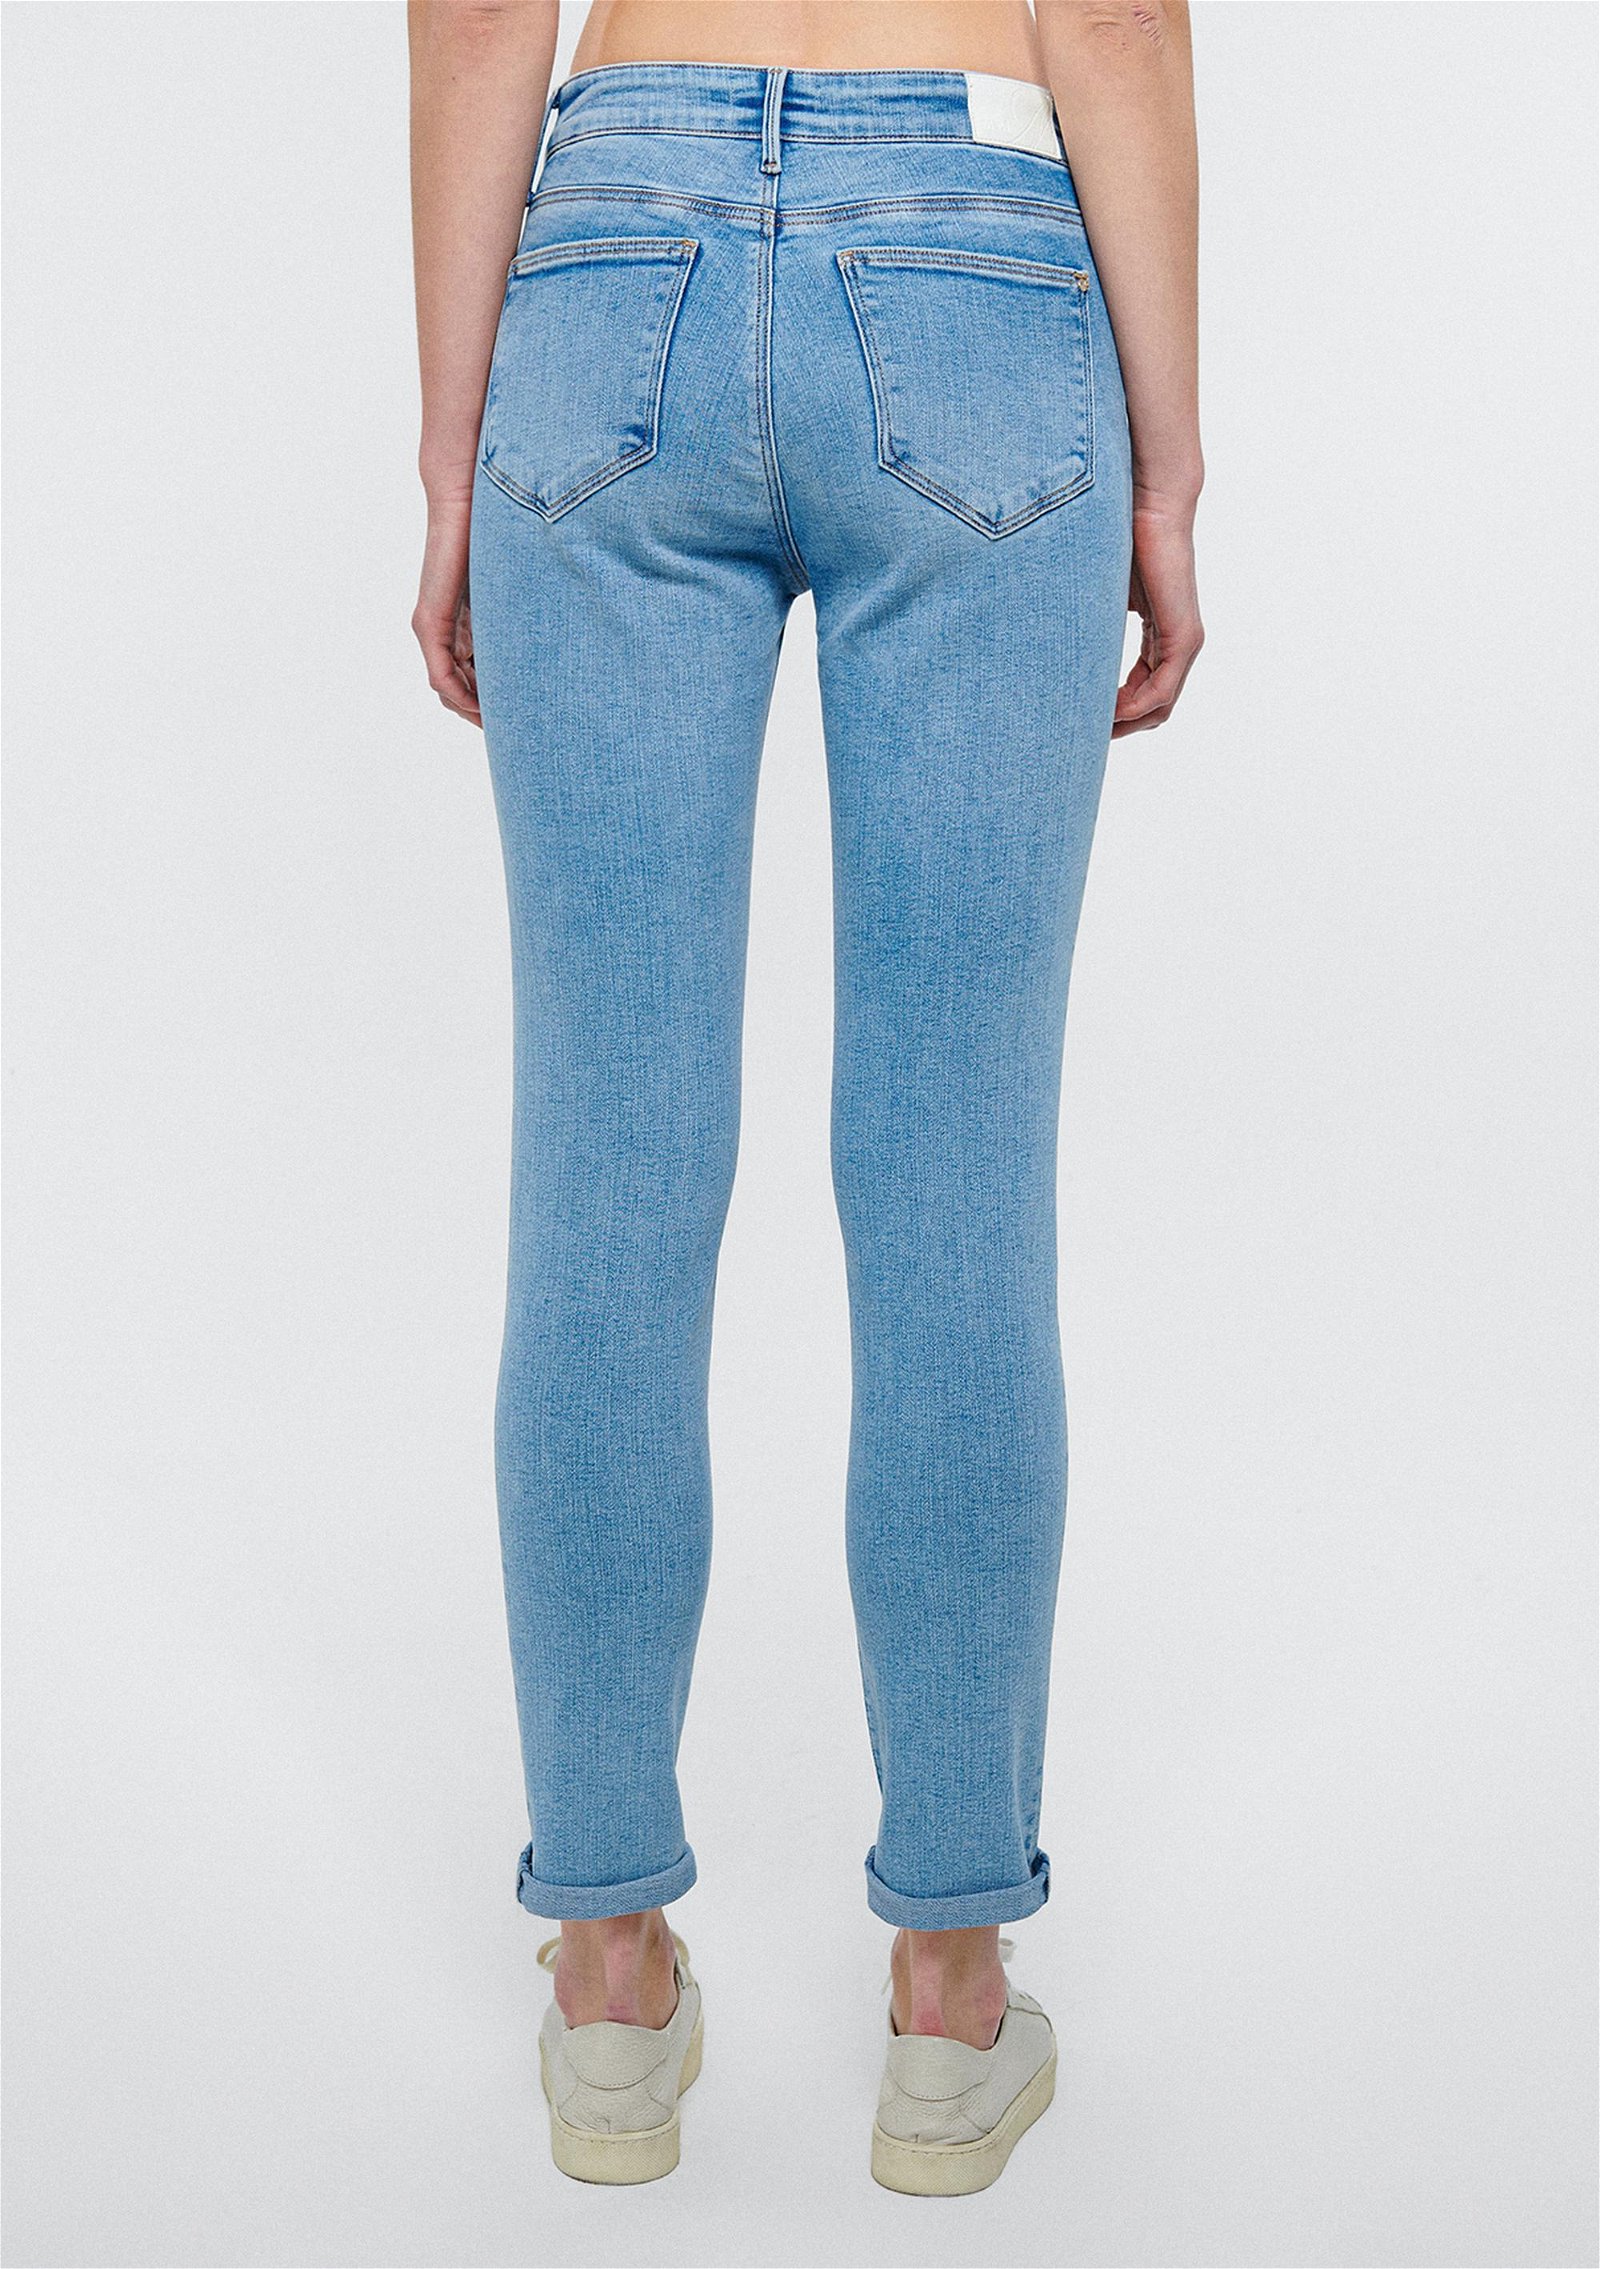 Mavi Ada Puslu Mavi Vintage Jean Pantolon 1020583658